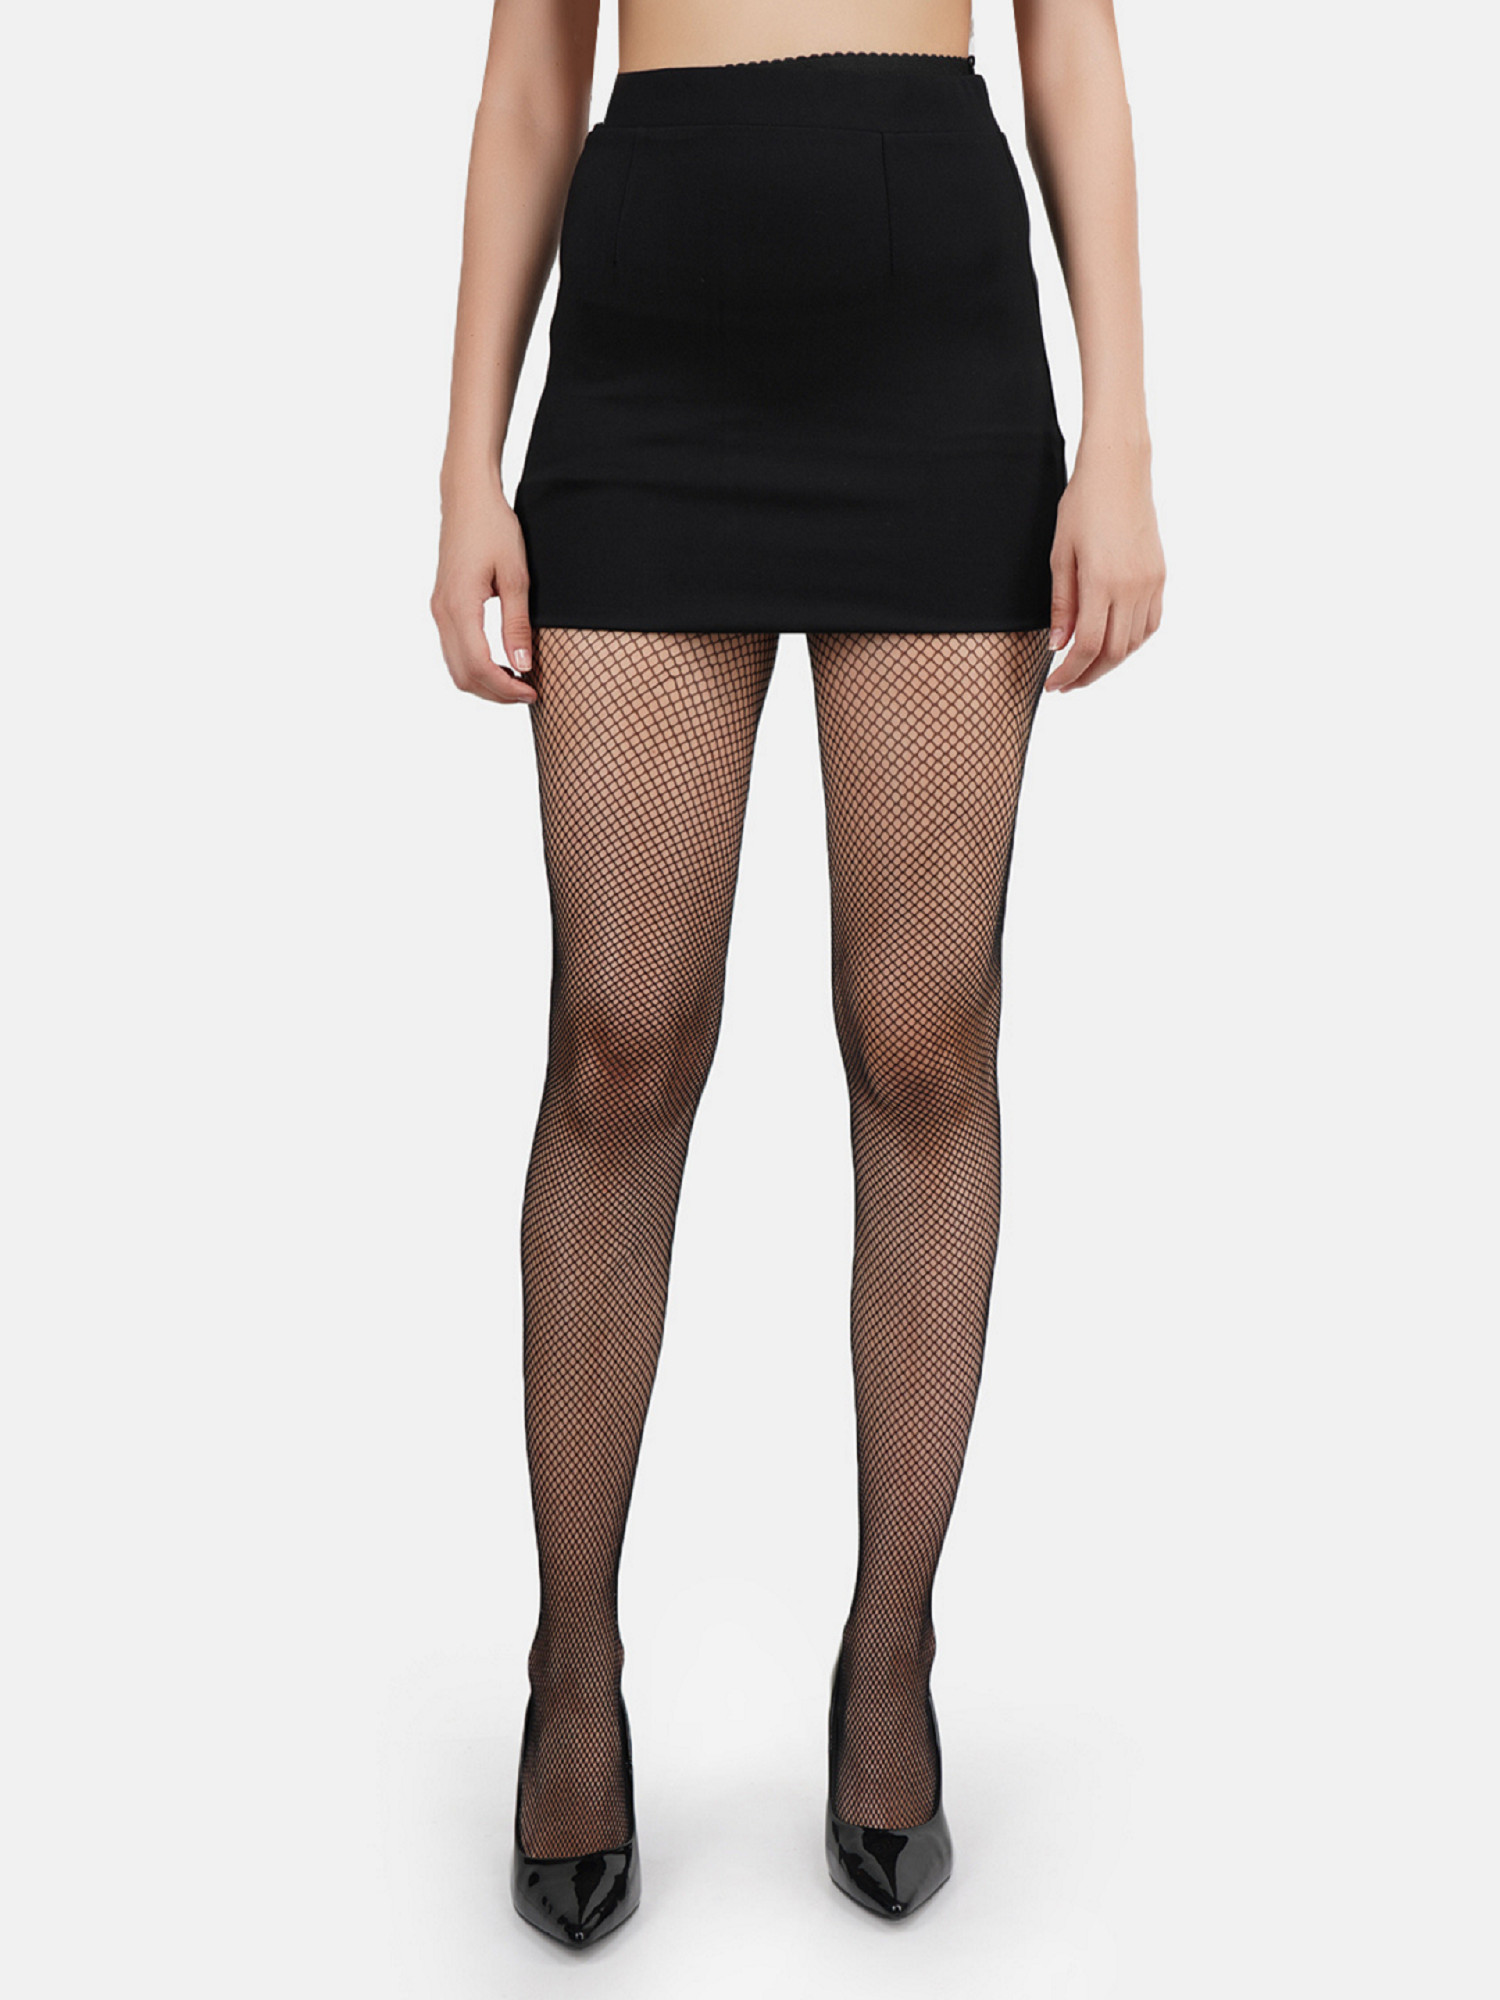 NEXT2SKIN Women's Fishnet Pattern Mesh Pantyhose Stockings Pack of 2 (Black, SmallNet-XLargeNet)